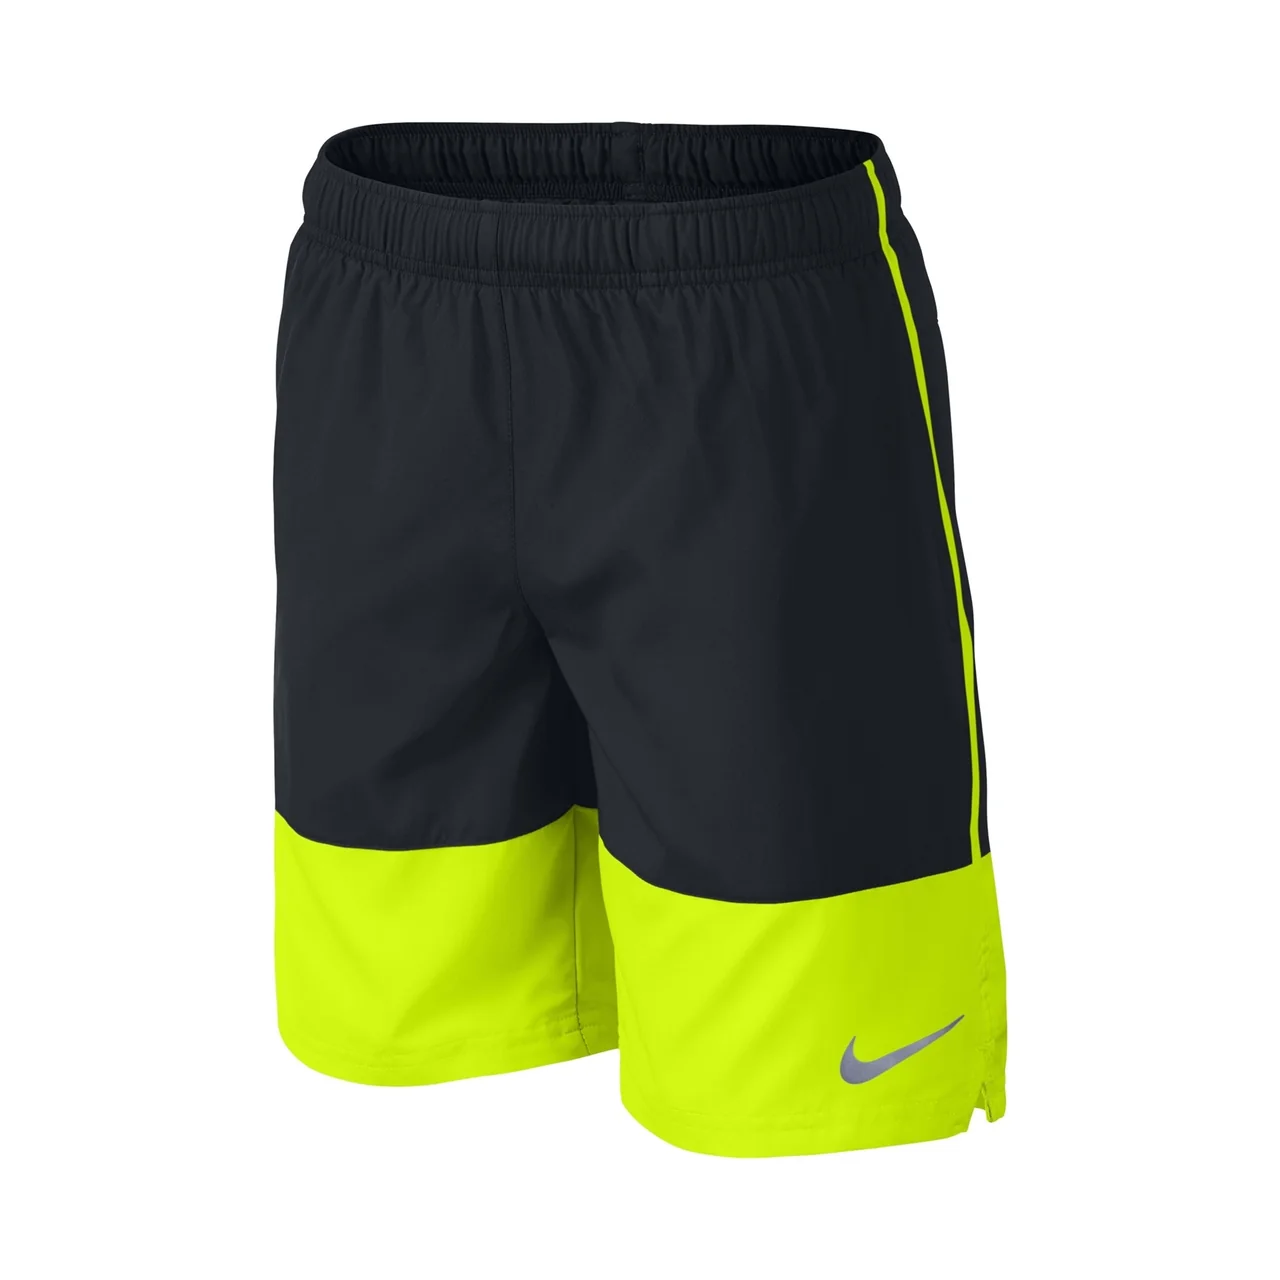 Nike Distance Shorts Boy Black/Neon Yellow Size 128cm